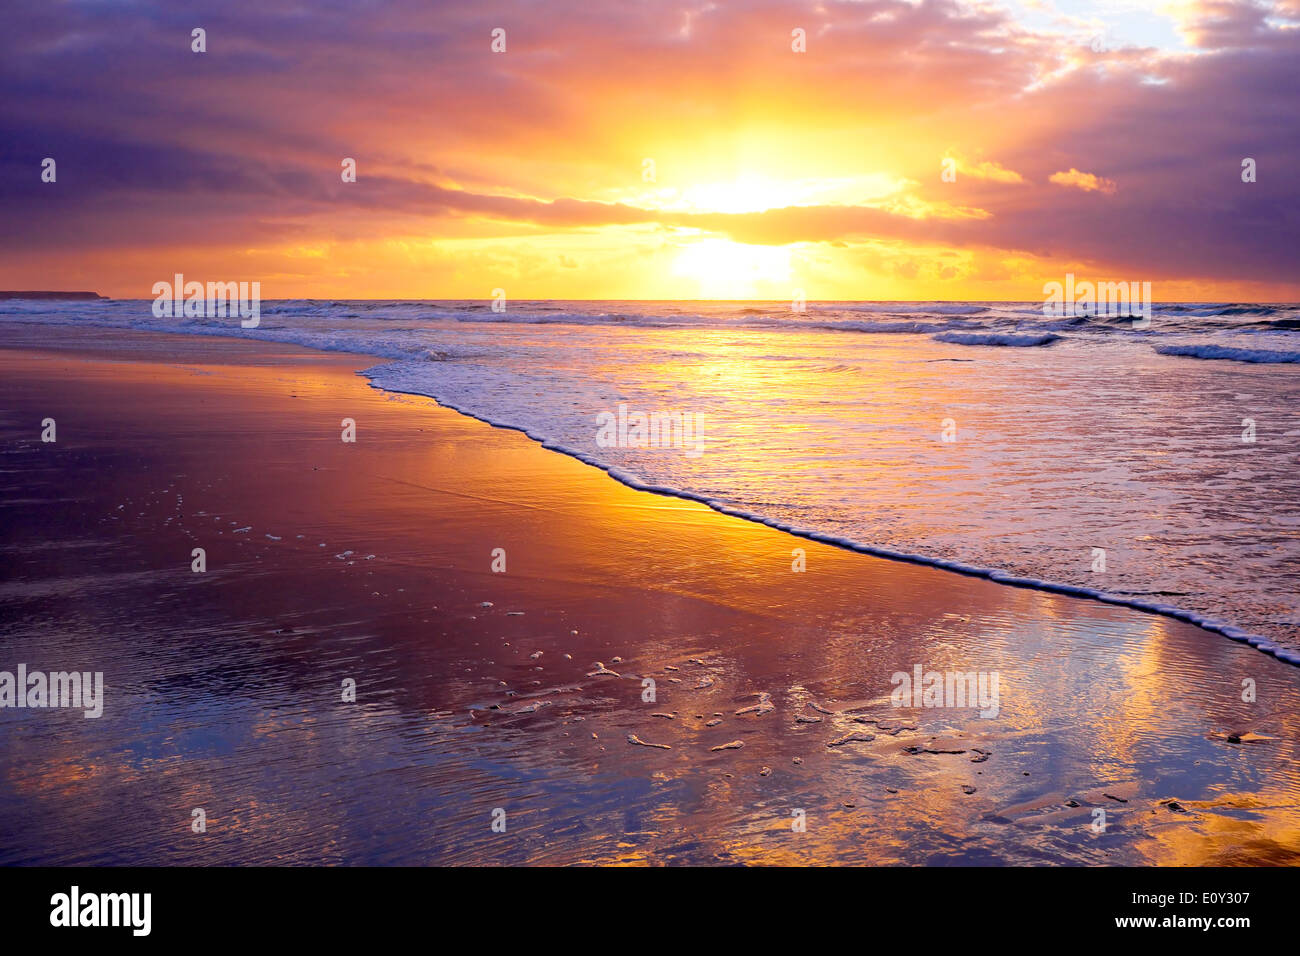 Magnifique coucher de soleil sur l'océan Atlantique au Portugal Banque D'Images